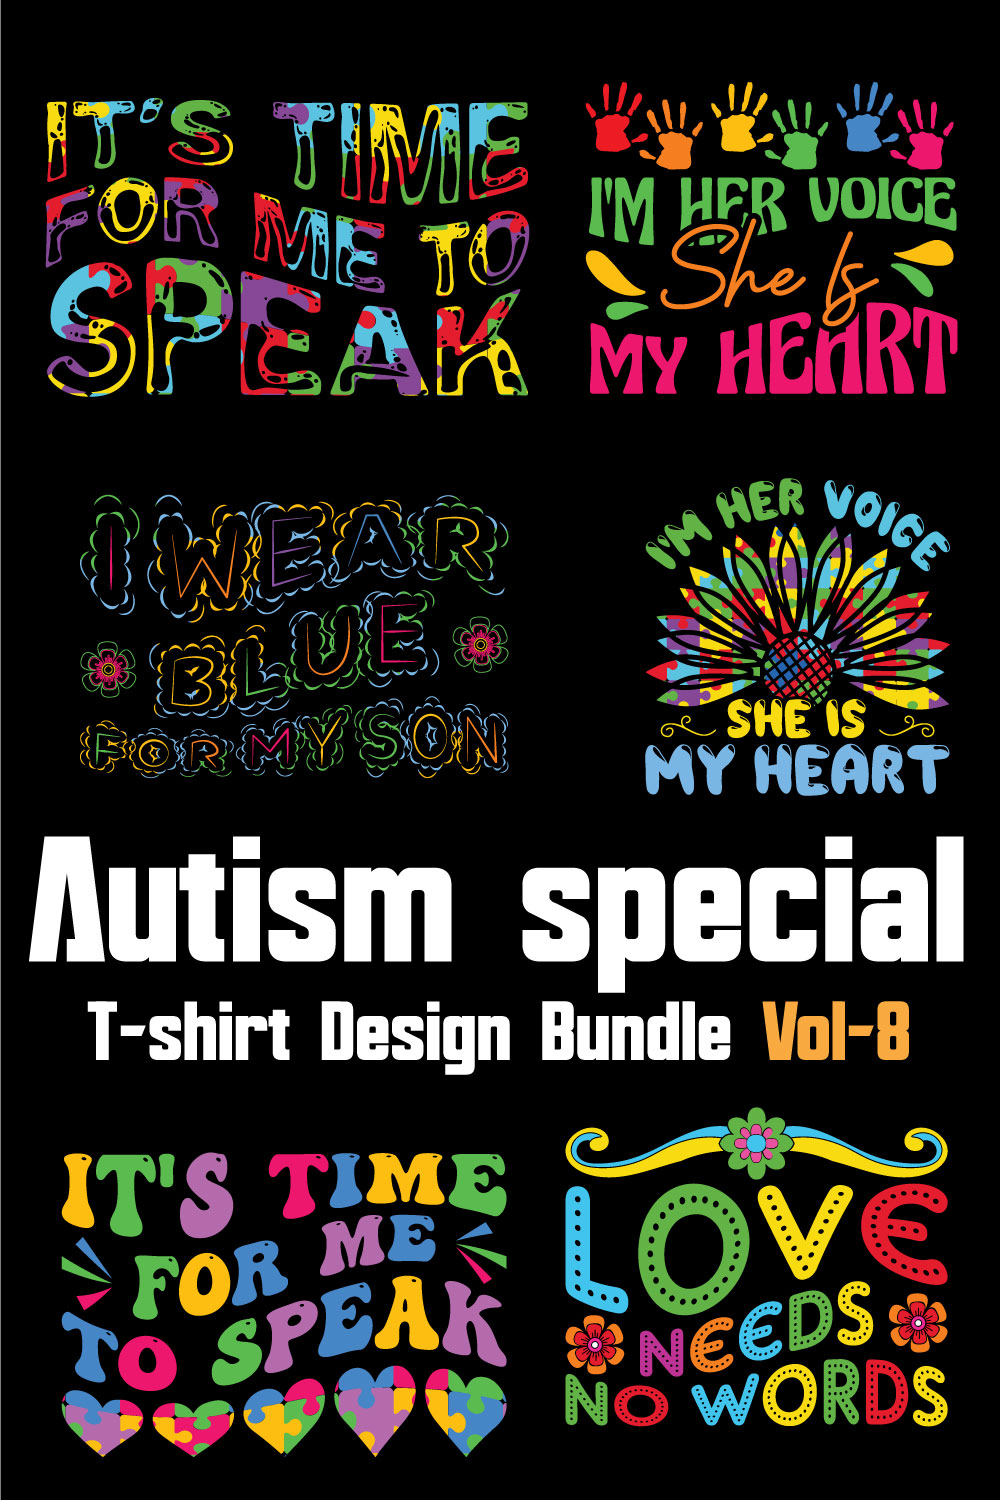 Autism Special T-shirt Design Bundle Vol-8 pinterest preview image.